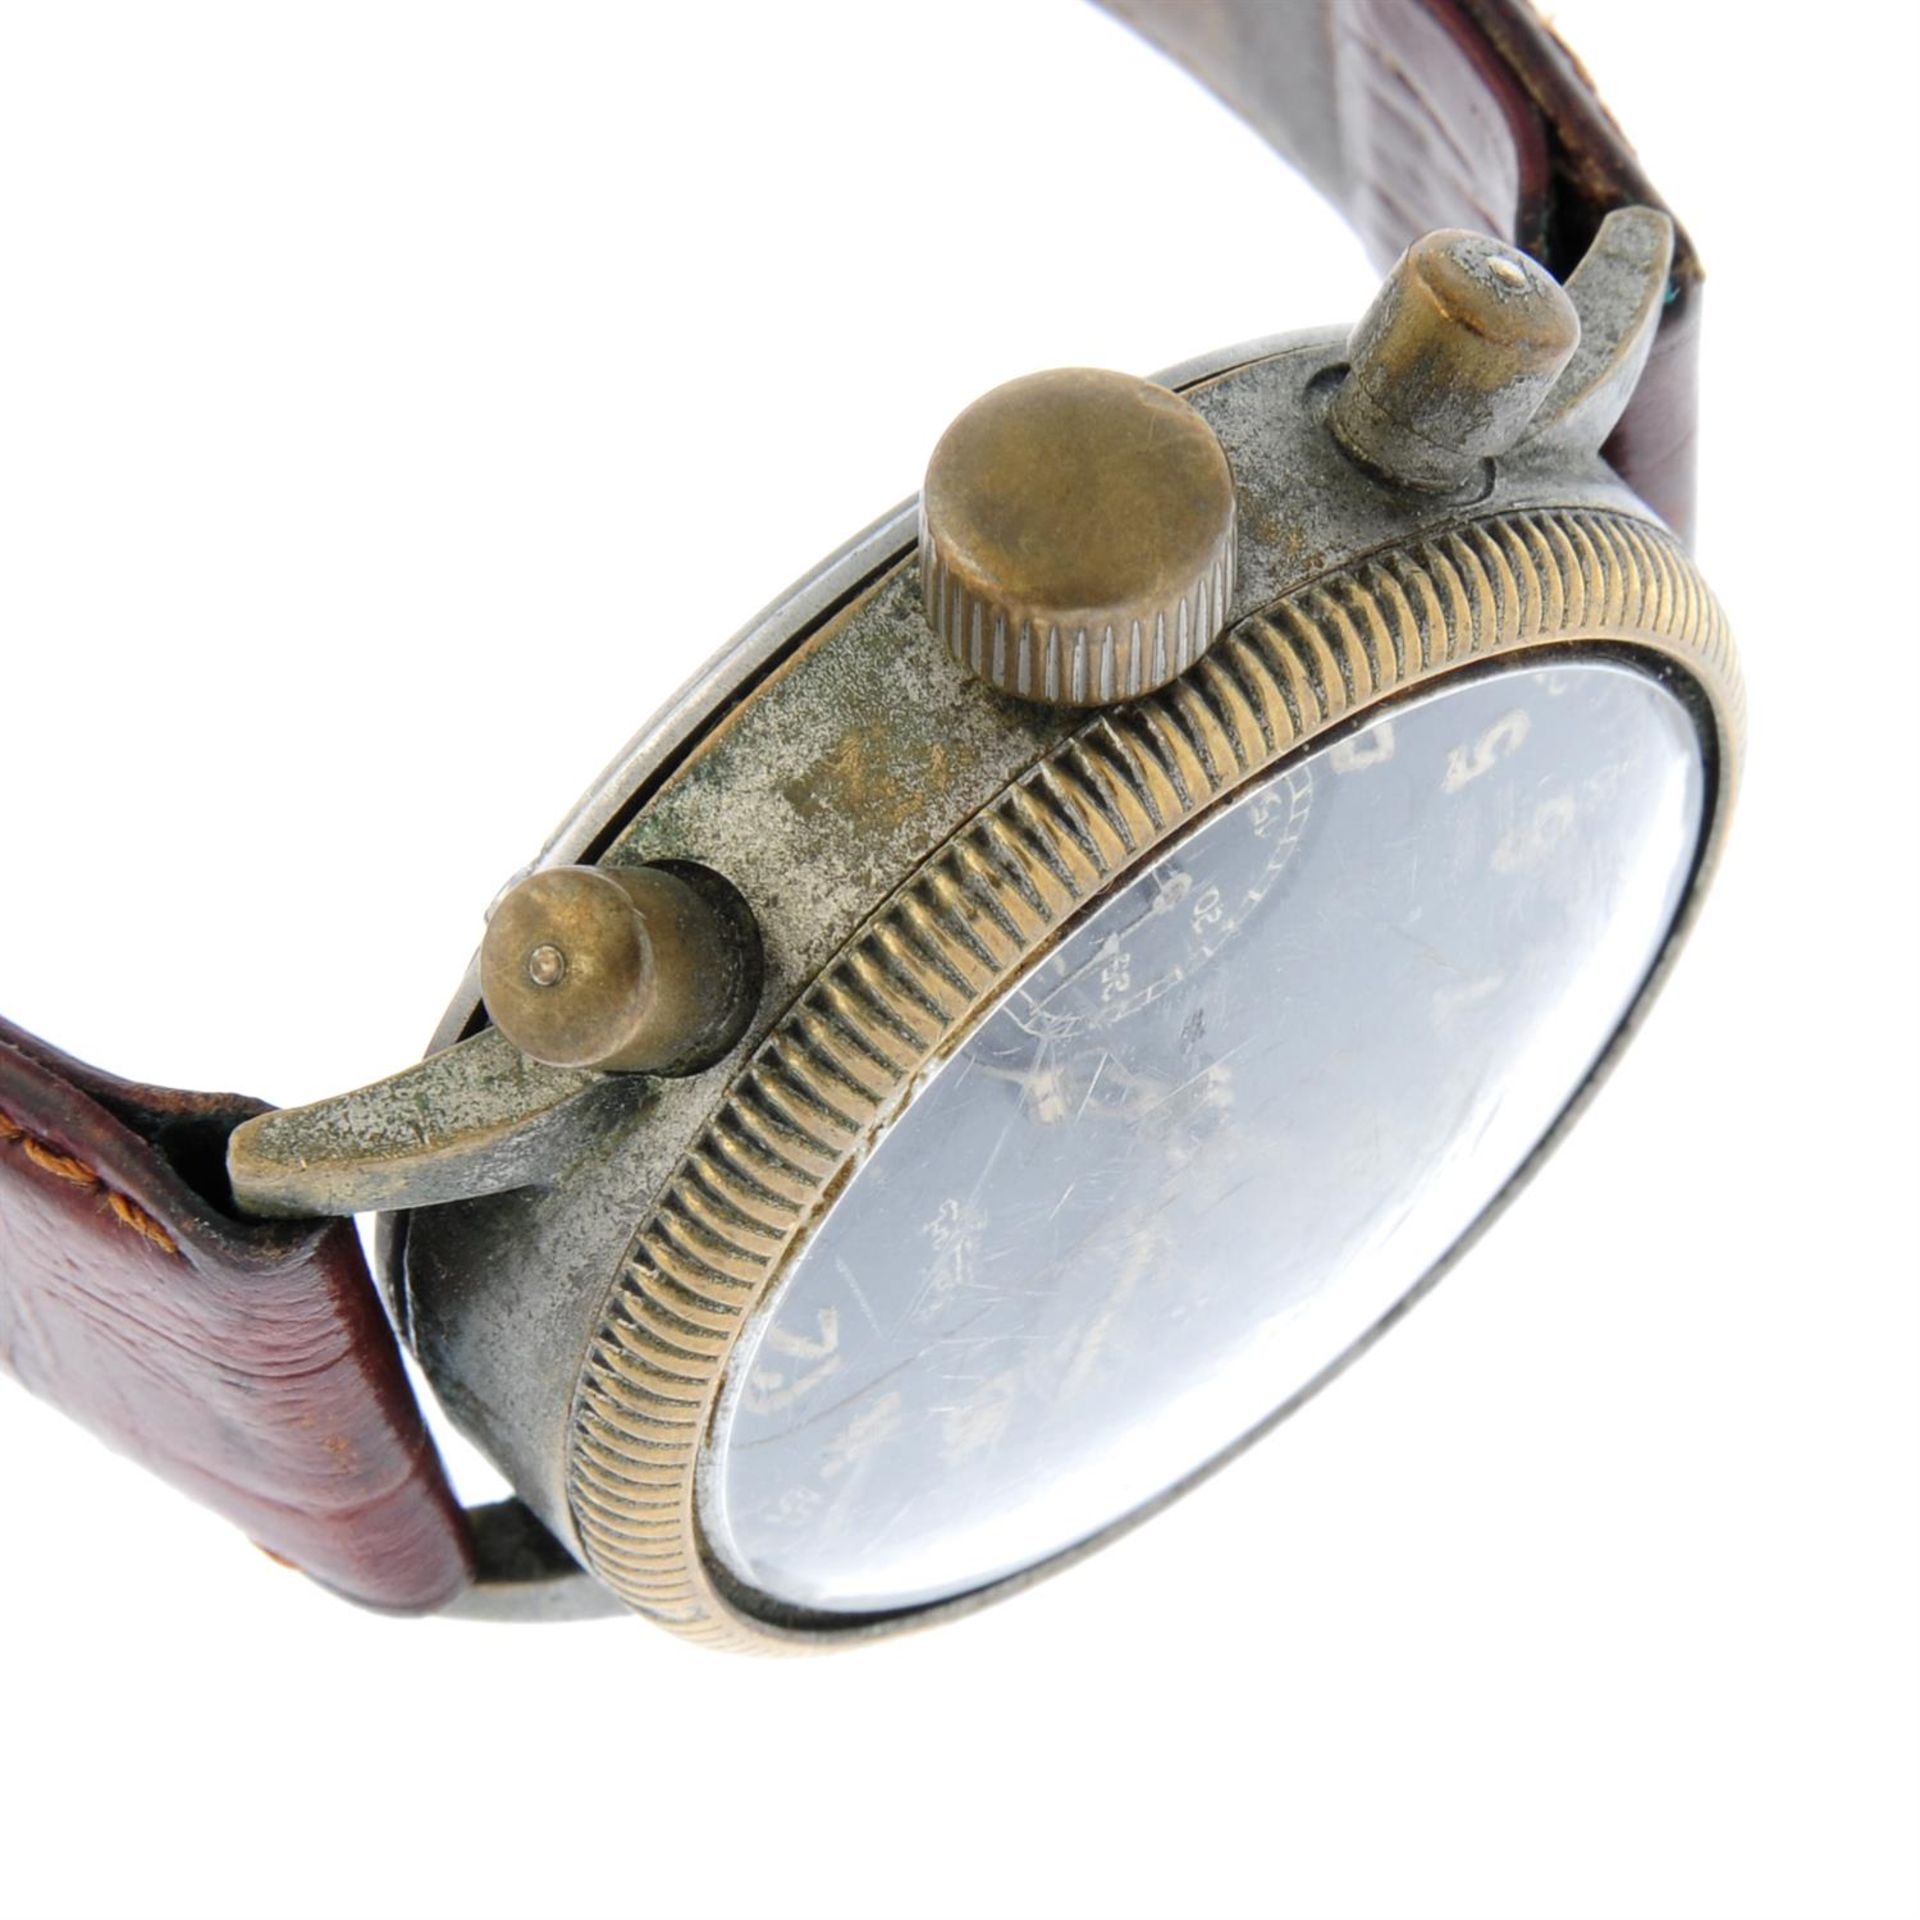 HANHART - a nickel plated chronograph wrist watch, 39mm. - Bild 3 aus 5